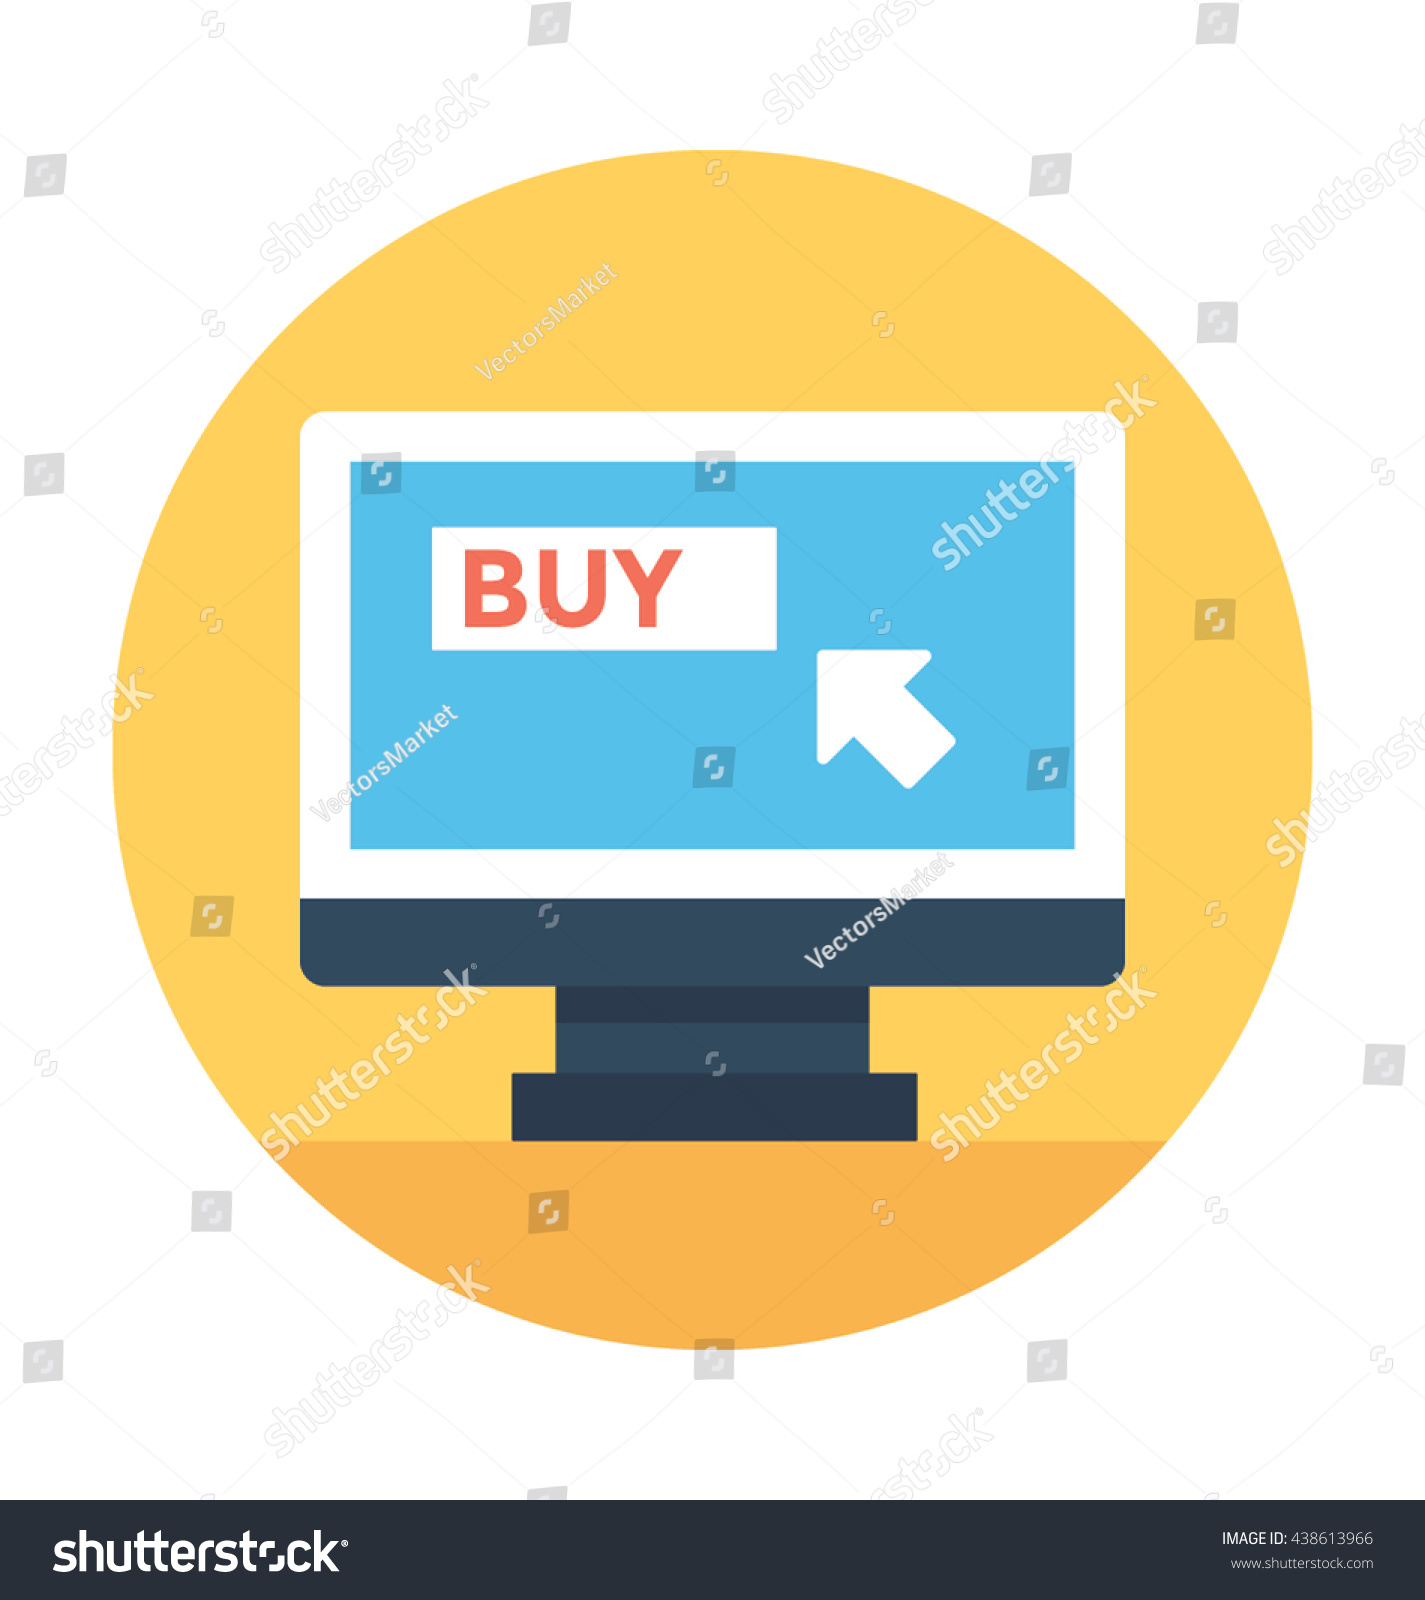 Download Buy Online Vector Icon Stock Vector 438613966 - Shutterstock